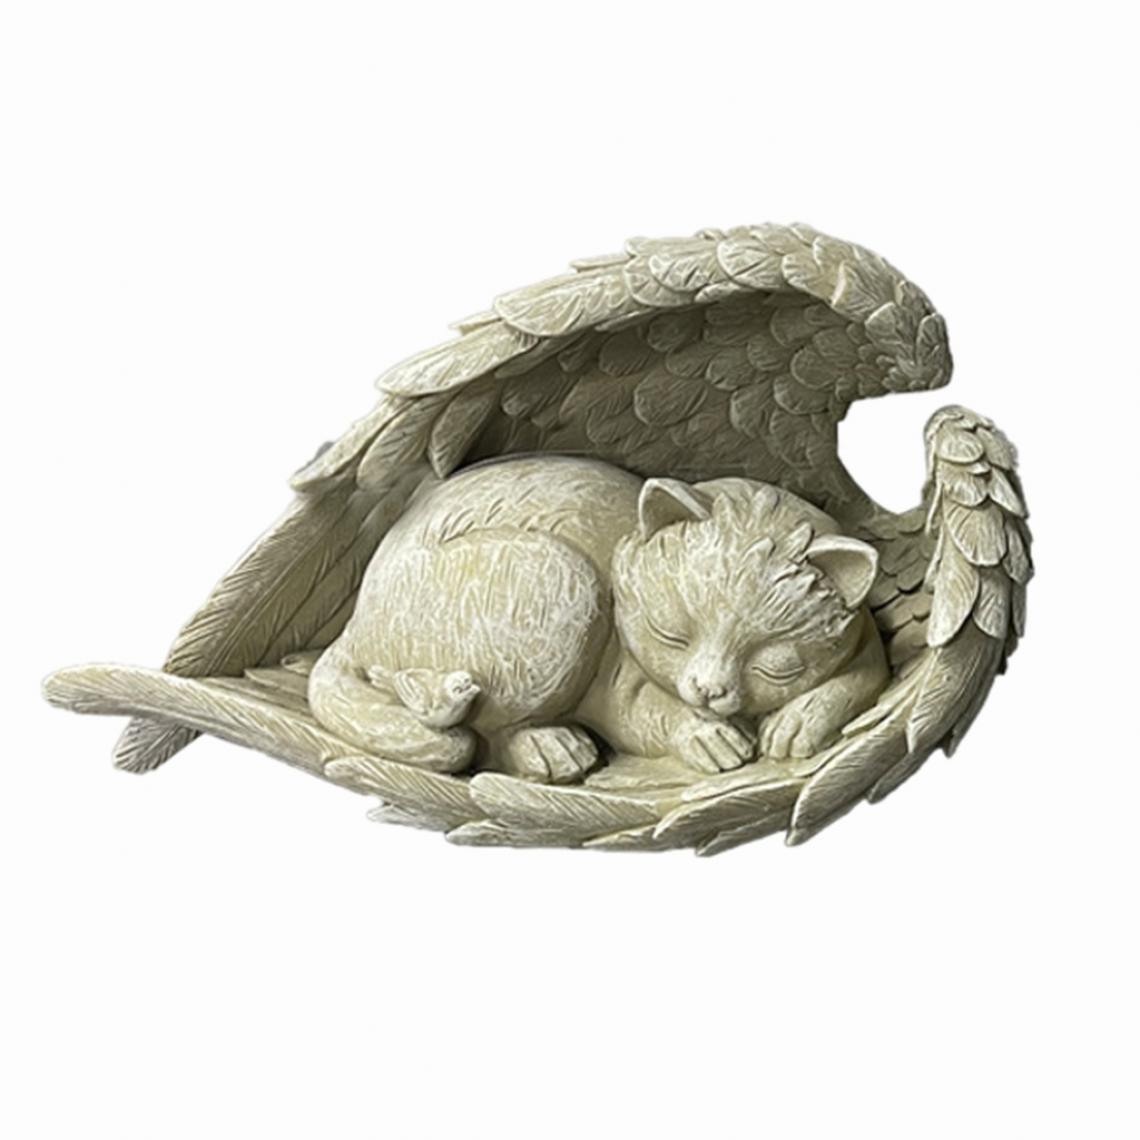 marque generique - Craft Memorial Statue Réaliste Animal Ange Sculpture Figurine Cadeau Chat - Petite déco d'exterieur